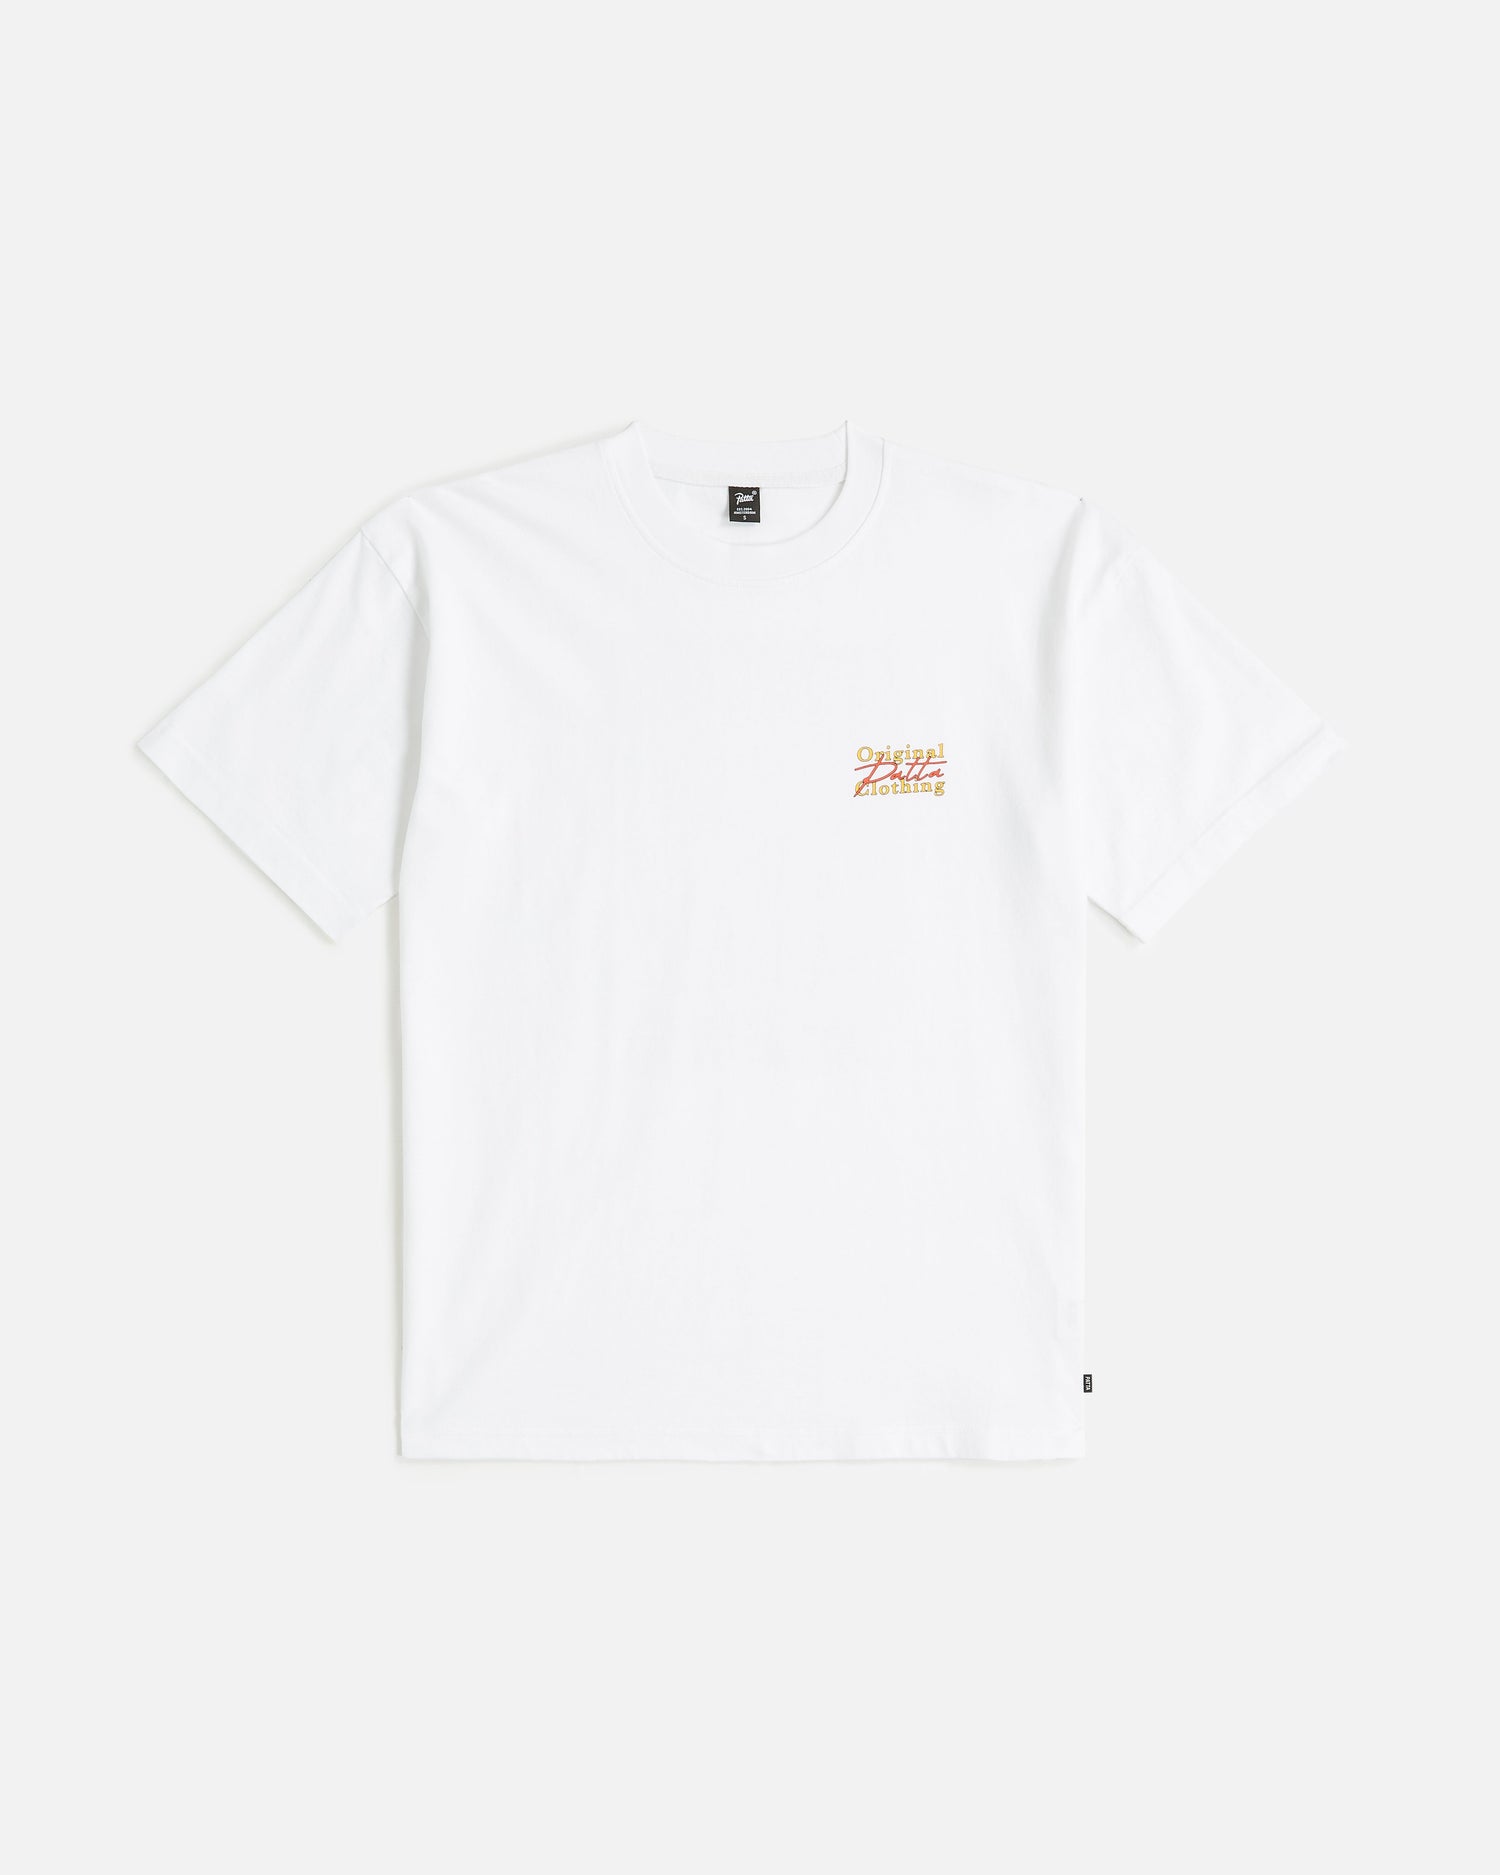 Patta Predator T-Shirt (White)